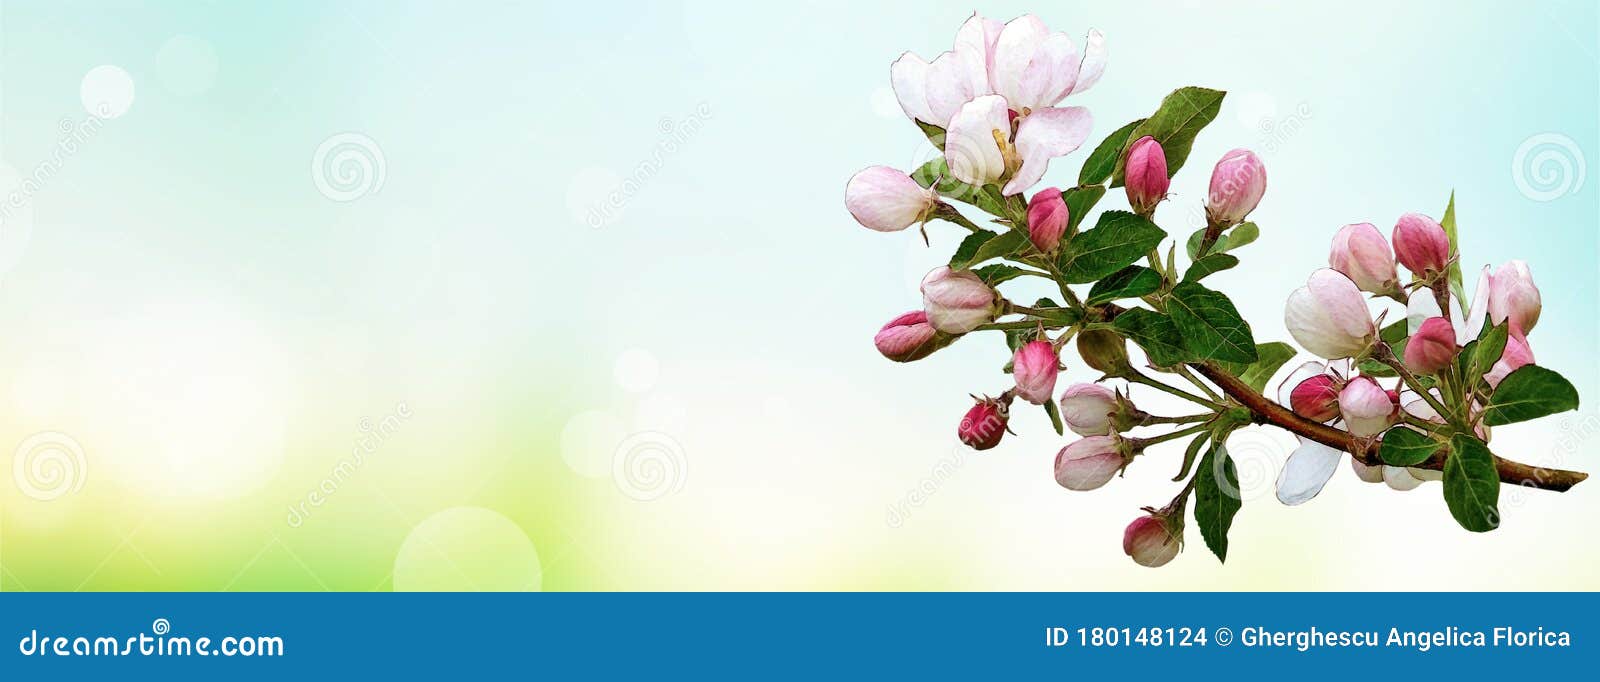 Flores Da Primavera Na Capa Do Facebook De Fundo Aquático Ilustração Stock  - Ilustração de beleza, bandeiras: 180148124